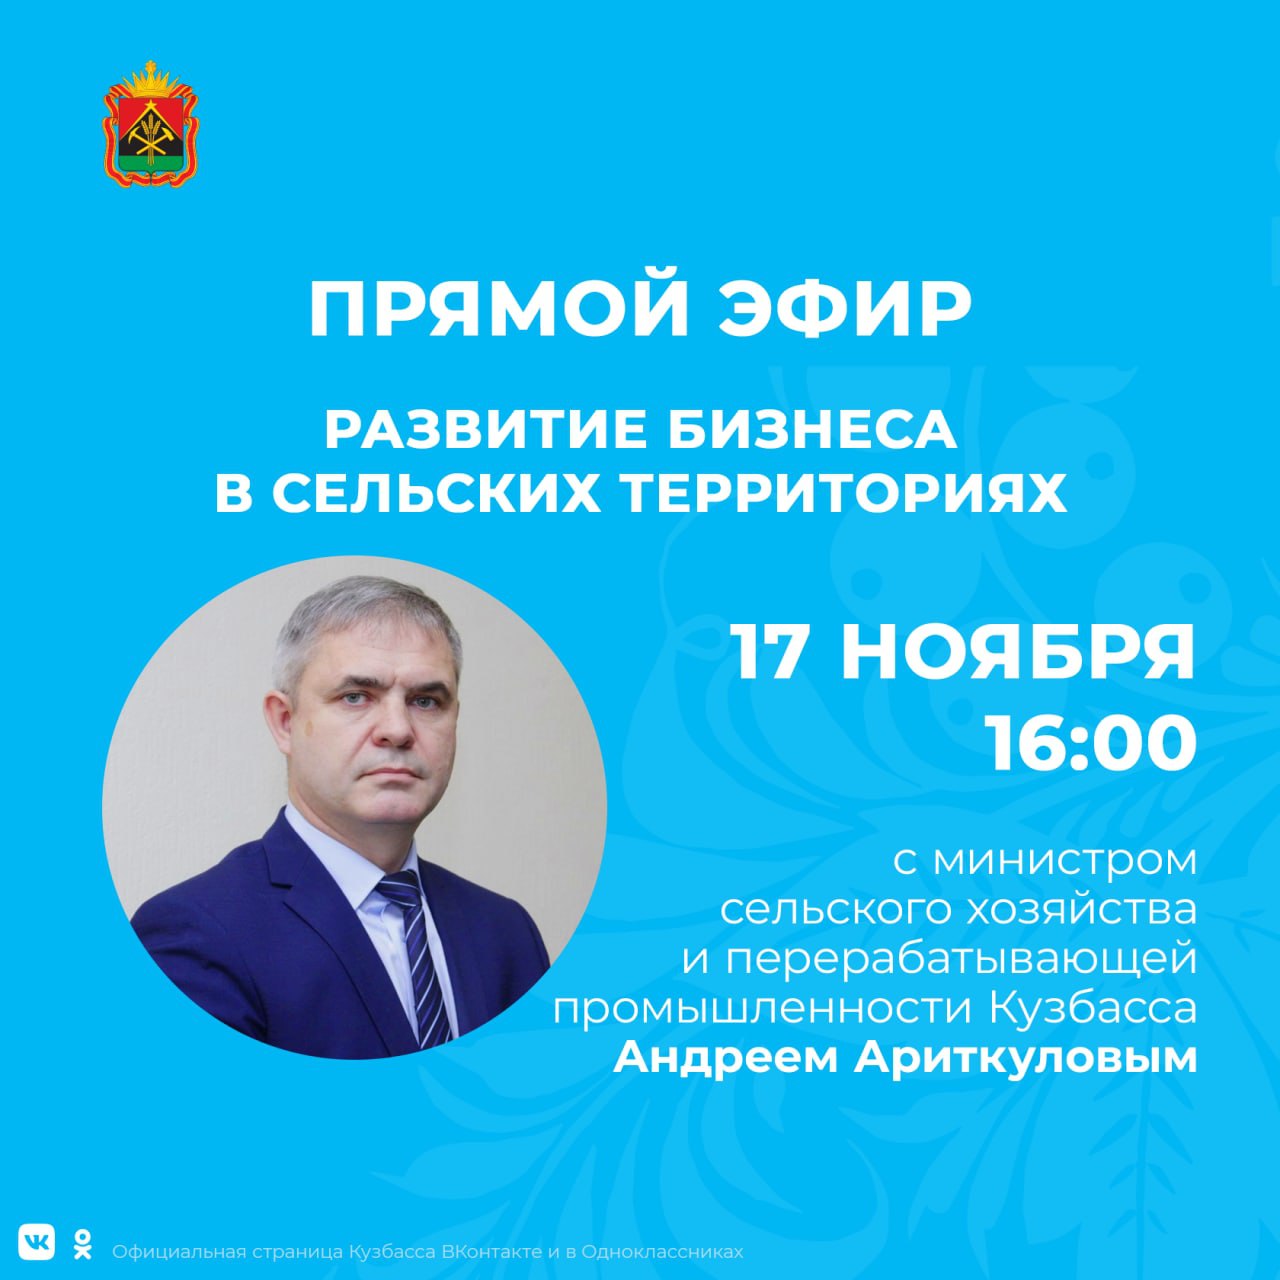 Задай вопрос министру: кузбассовцам в прямом эфире расскажут о бизнесе по-деревенски